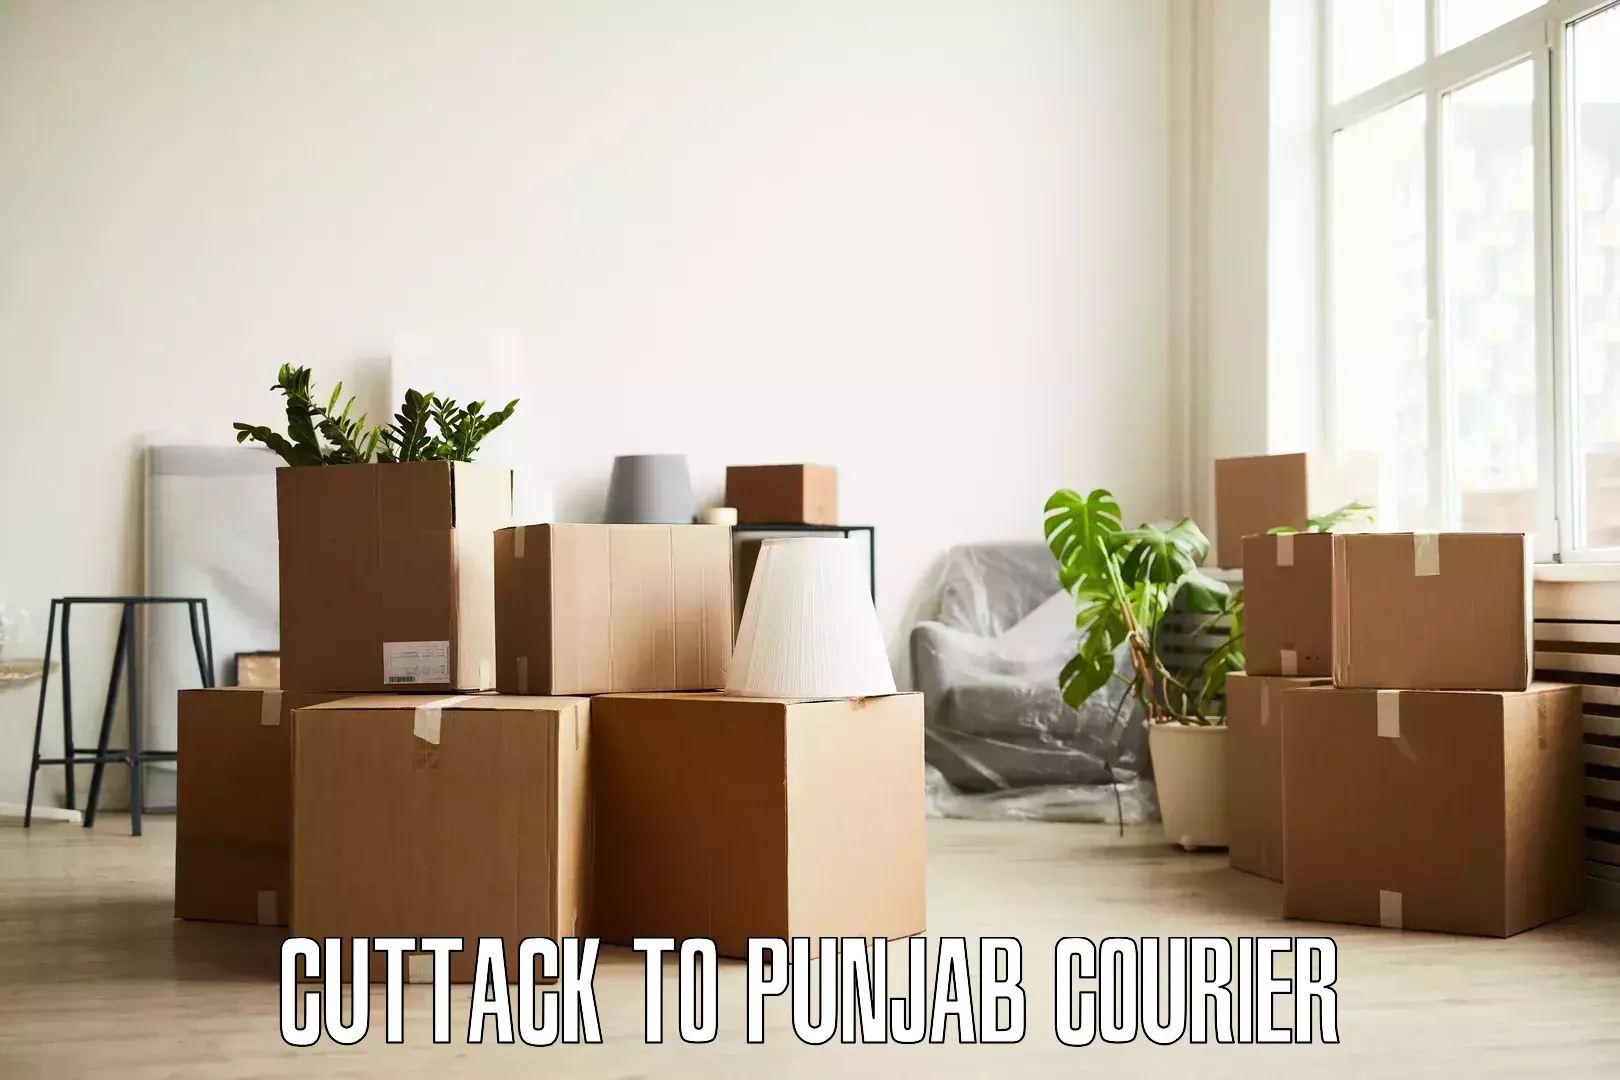 Furniture moving plans Cuttack to Punjab